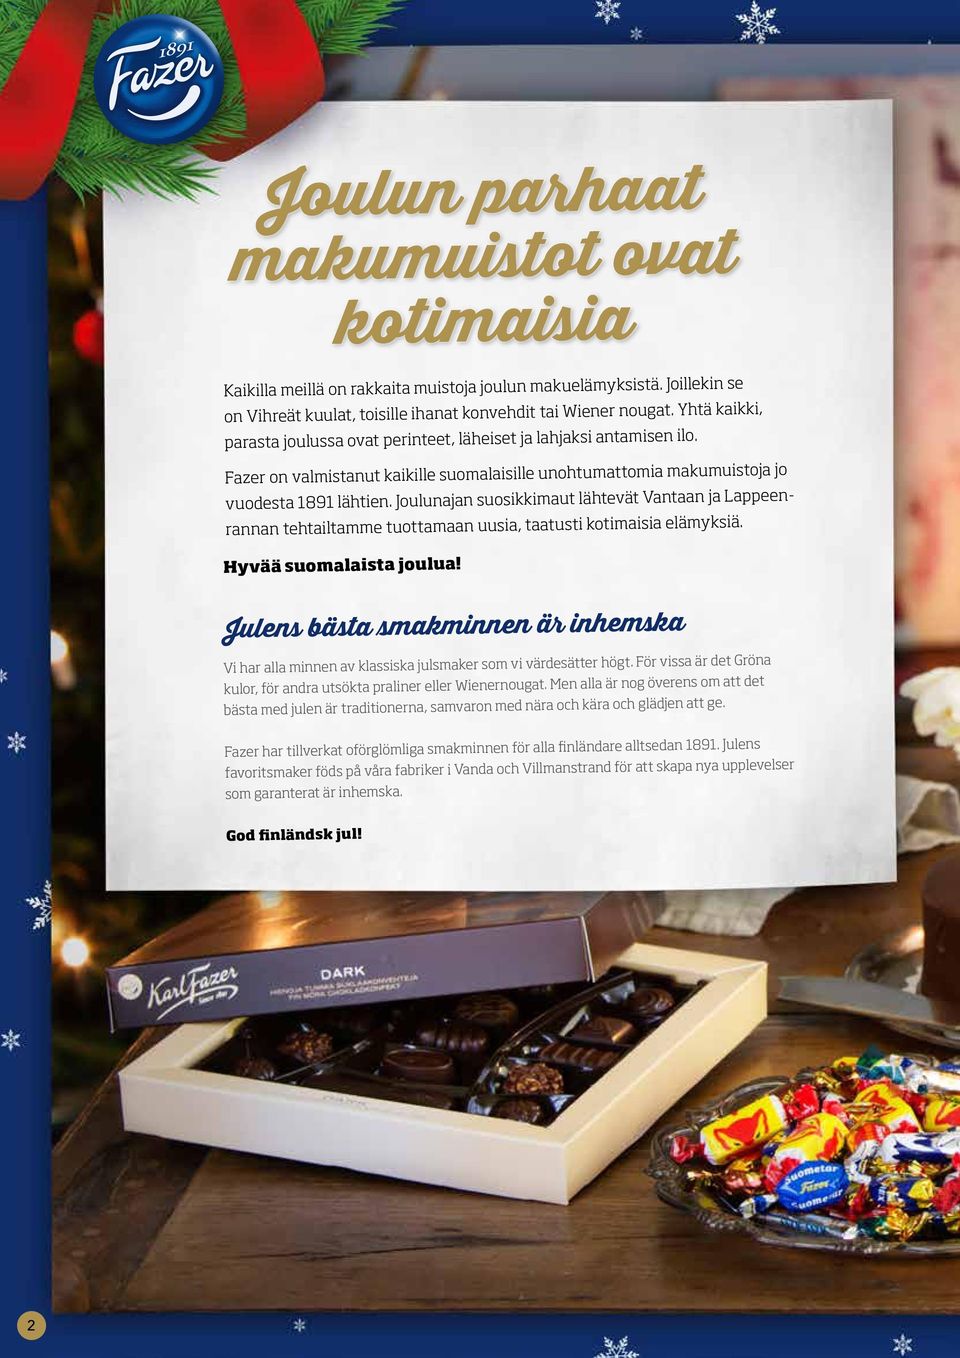 Joulunajan suosikkimaut lähtevät Vantaan ja Lappeenrannan tehtailtamme tuottamaan uusia, taatusti kotimaisia elämyksiä. Hyvää suomalaista joulua!